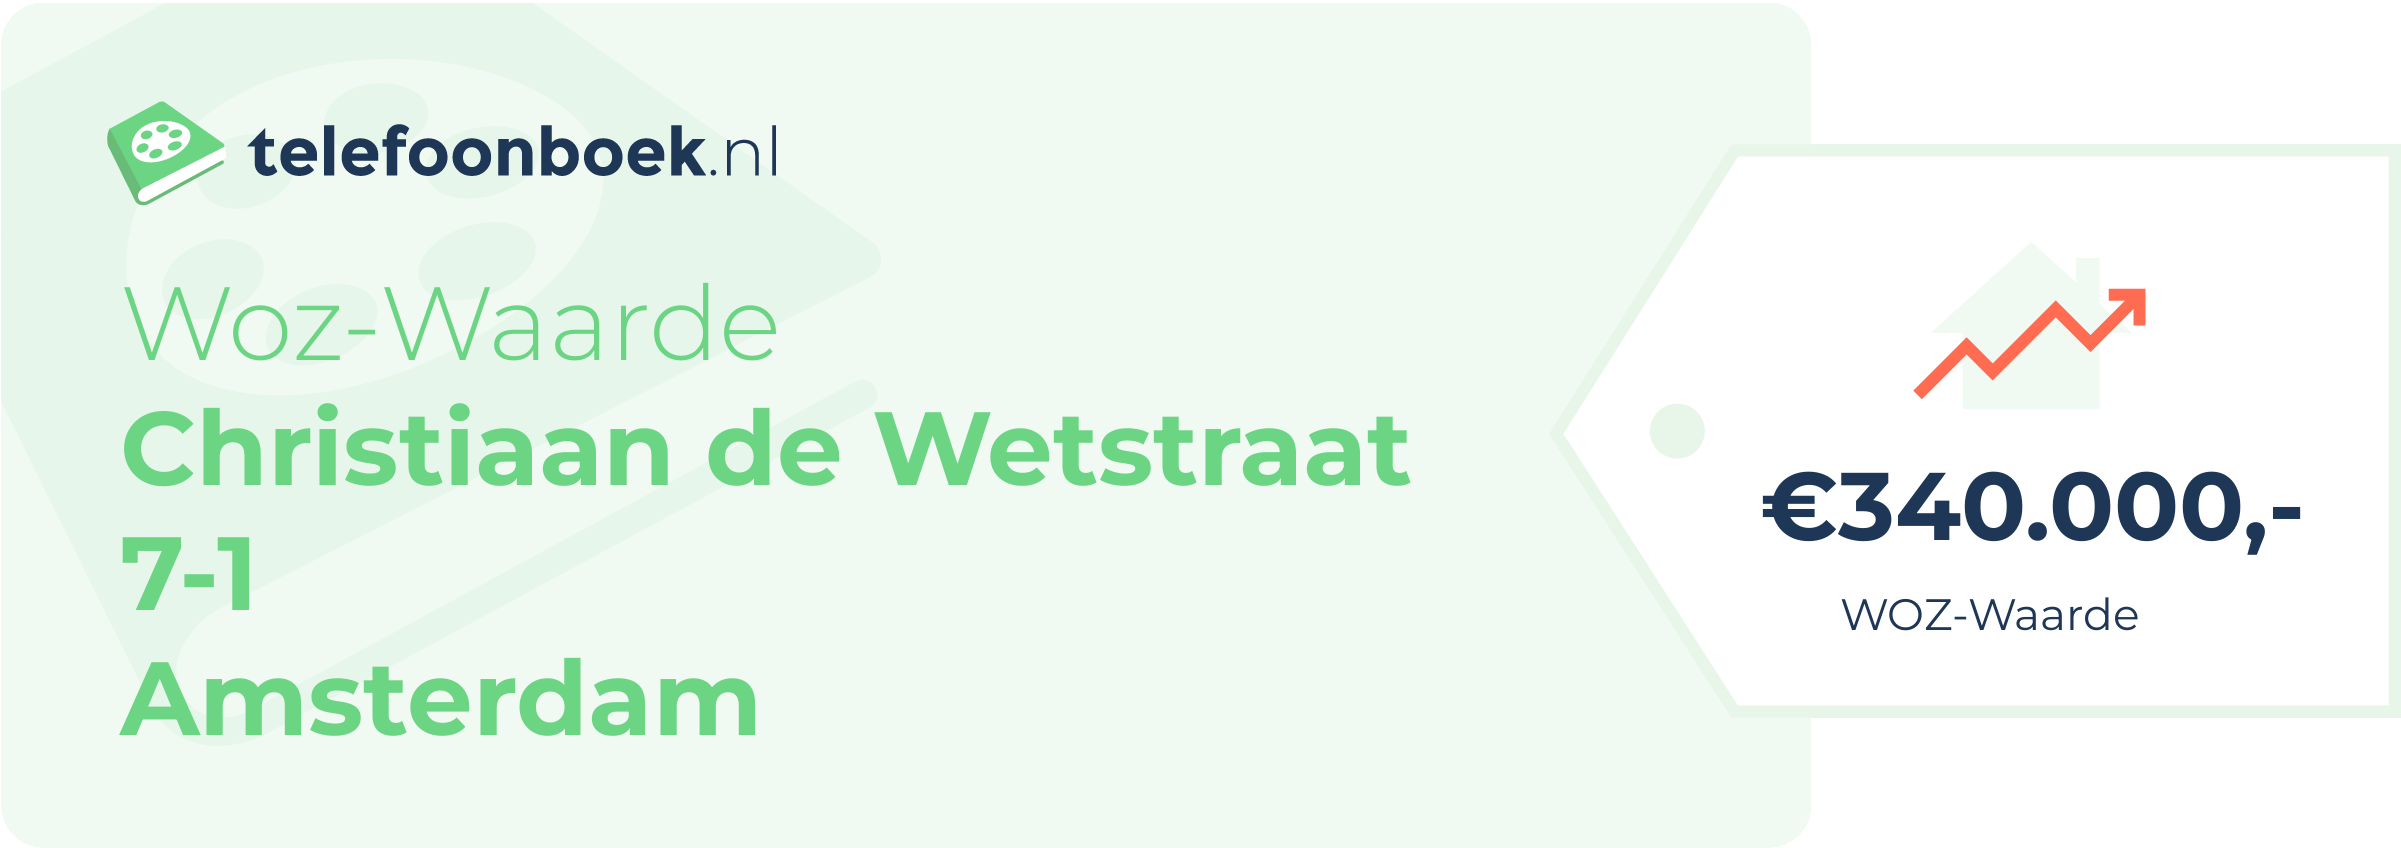 WOZ-waarde Christiaan De Wetstraat 7-1 Amsterdam